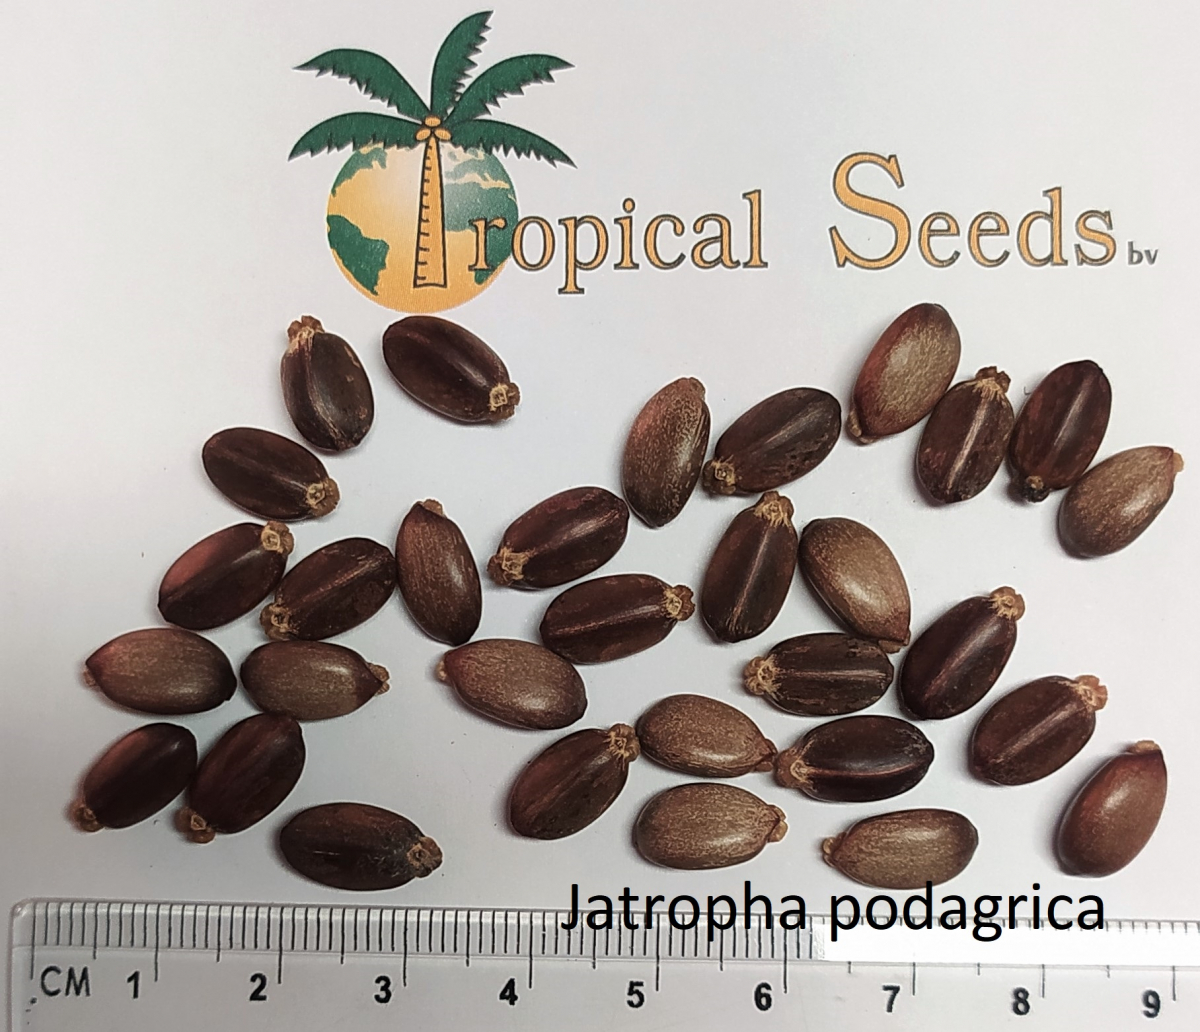 Jatropha podagrica Seeds